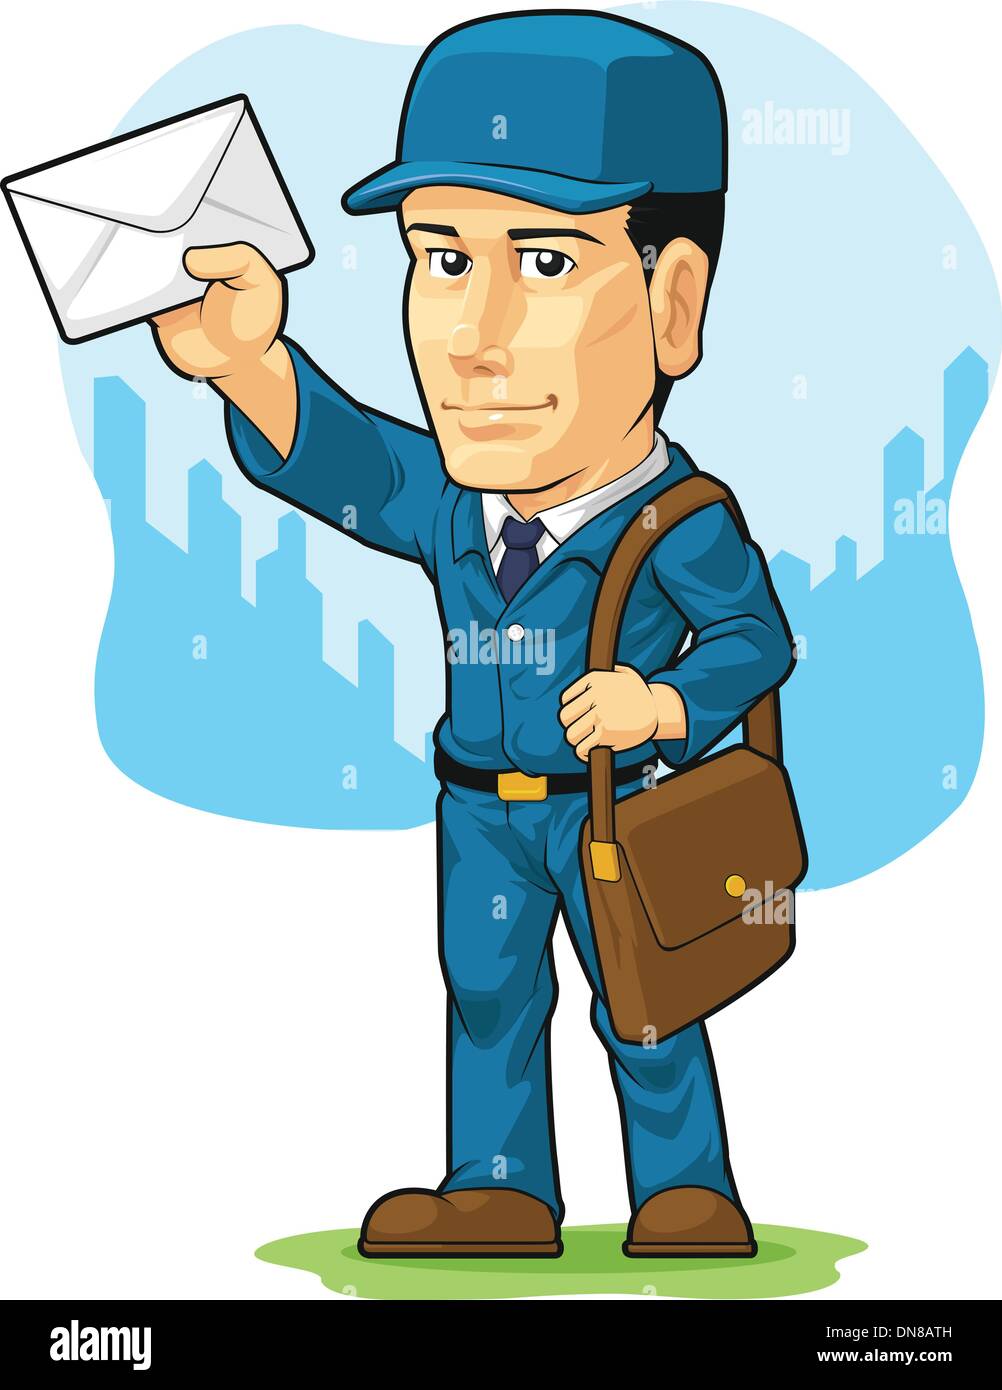 Cartoon of Postman or Mailman Stock Vector